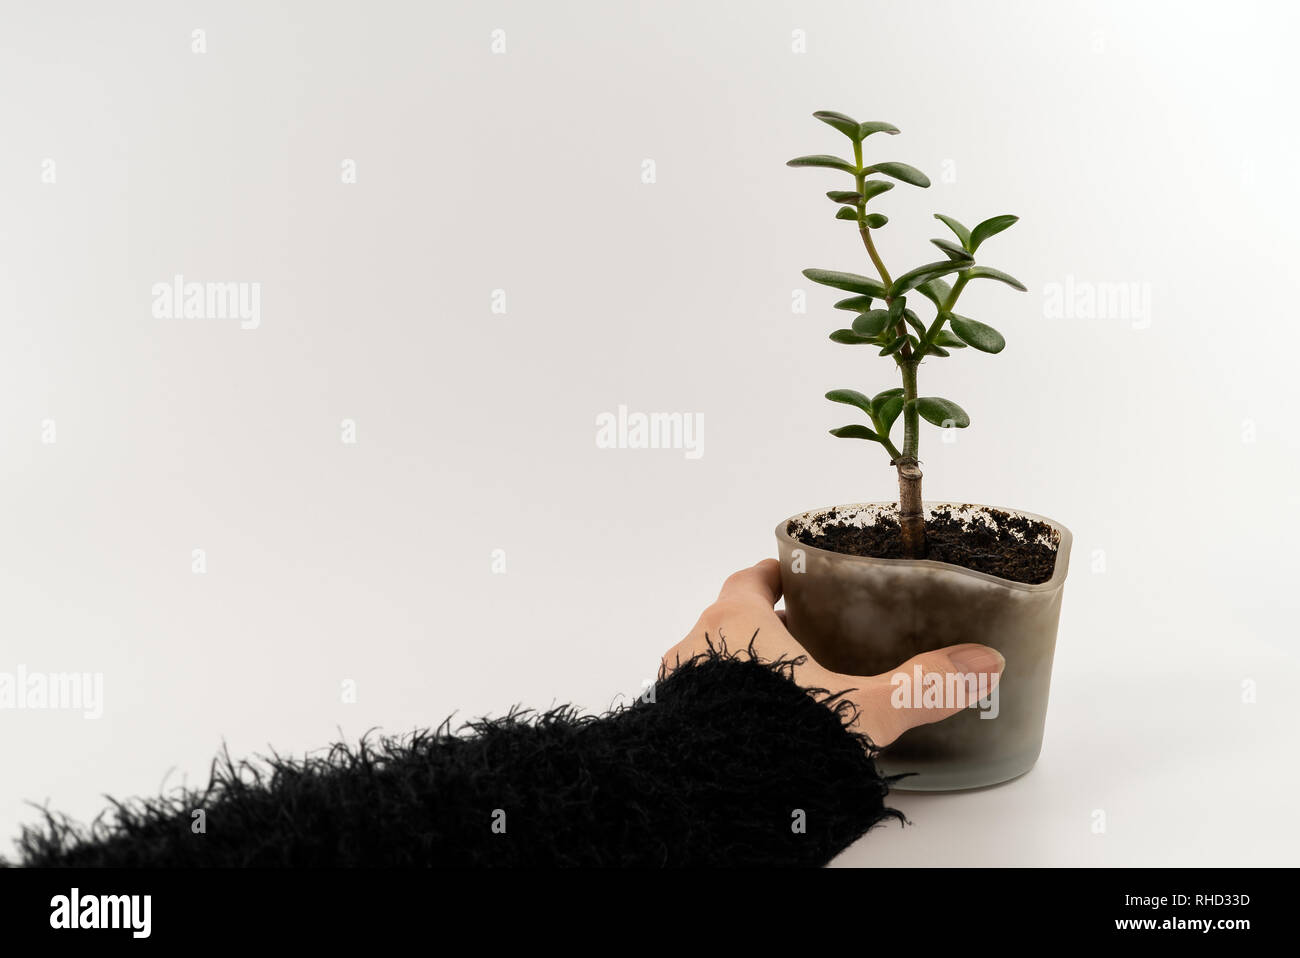 Ausschnitt der Frau hand mit einem grünen wachsenden sukkulente Pflanze in ein modernes Glas Topf mit frischen, natürlichen Boden - Konzept von Umweltschutz, neues Leben Stockfoto